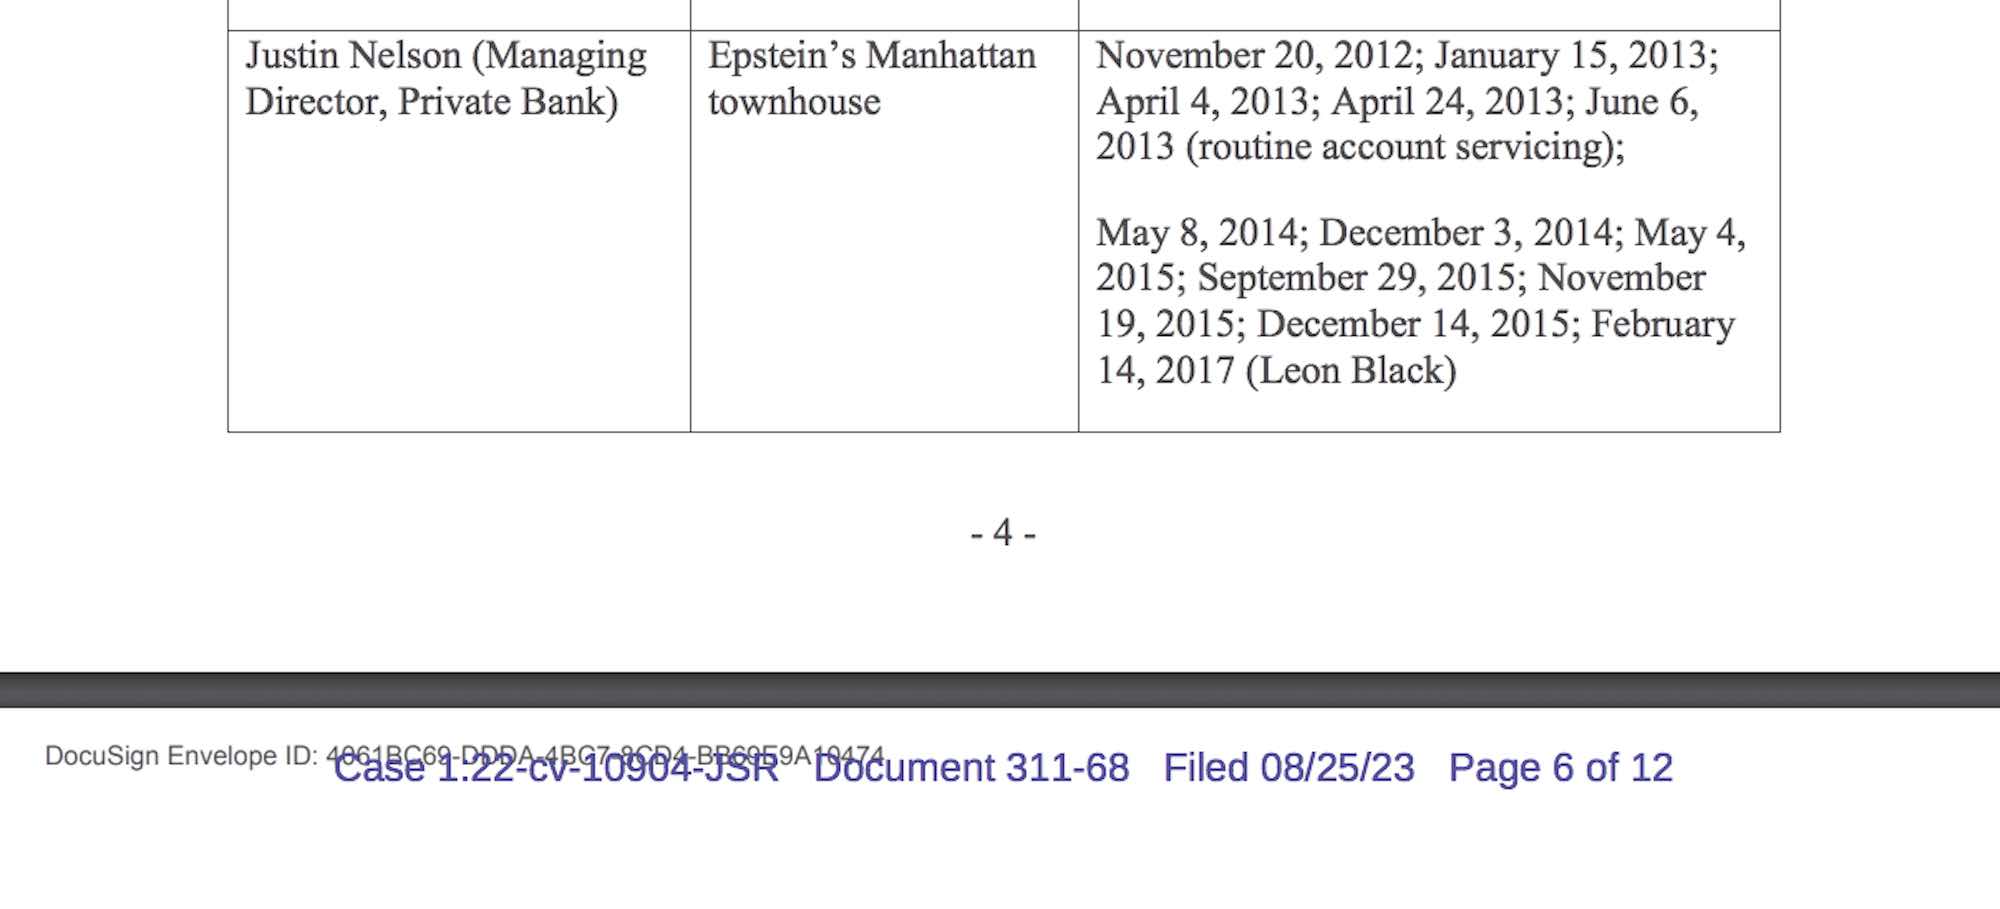 Un documento judicial de JPMorgan revela que otro ejecutivo bancario visitó las residencias de tráfico sexual de Jeffrey Epstein en 13 ocasiones